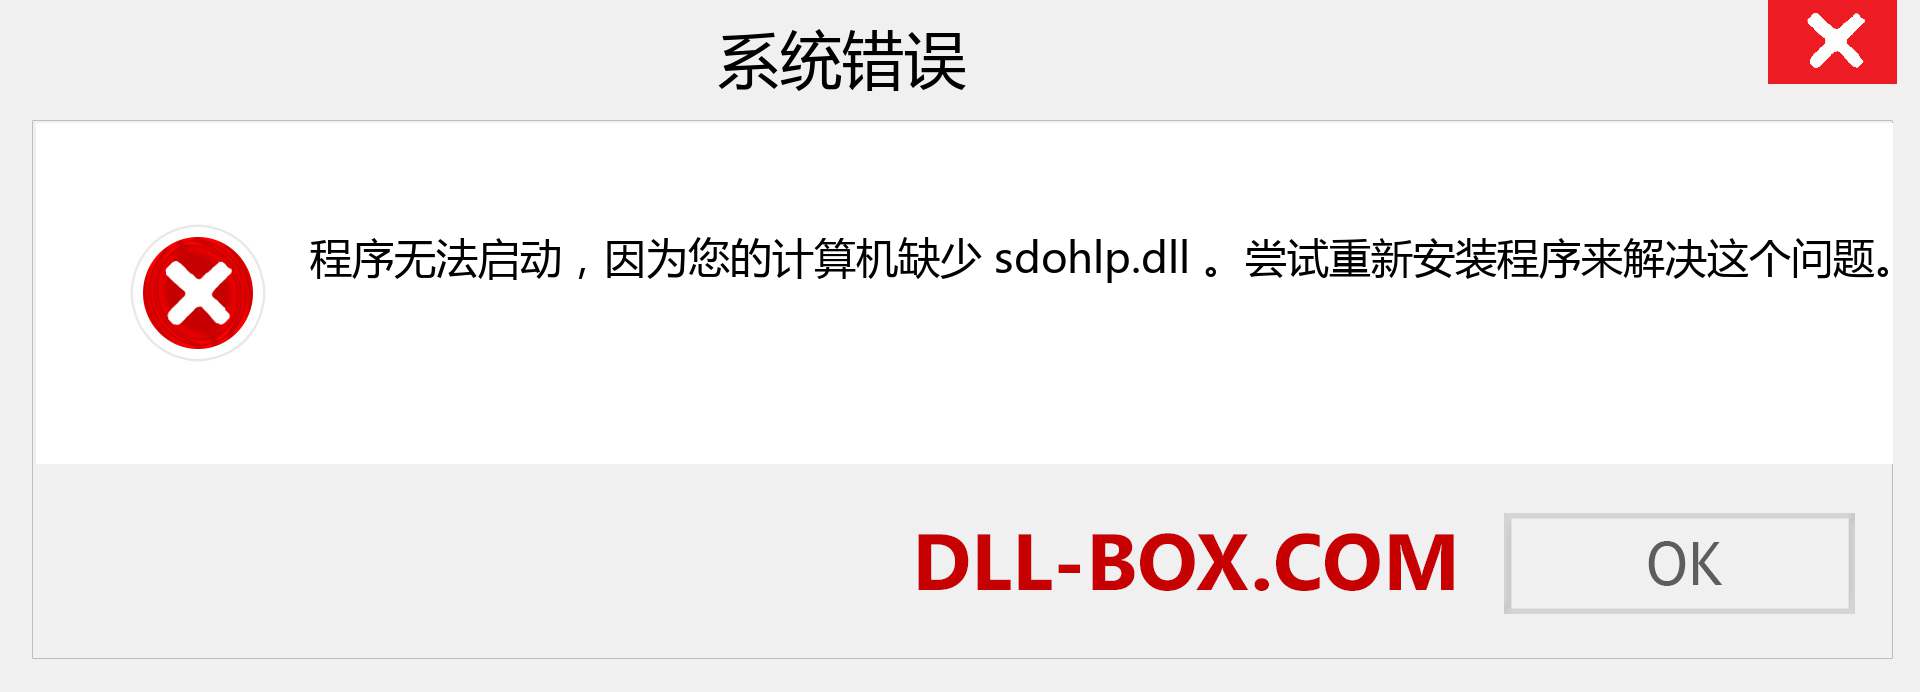 sdohlp.dll 文件丢失？。 适用于 Windows 7、8、10 的下载 - 修复 Windows、照片、图像上的 sdohlp dll 丢失错误